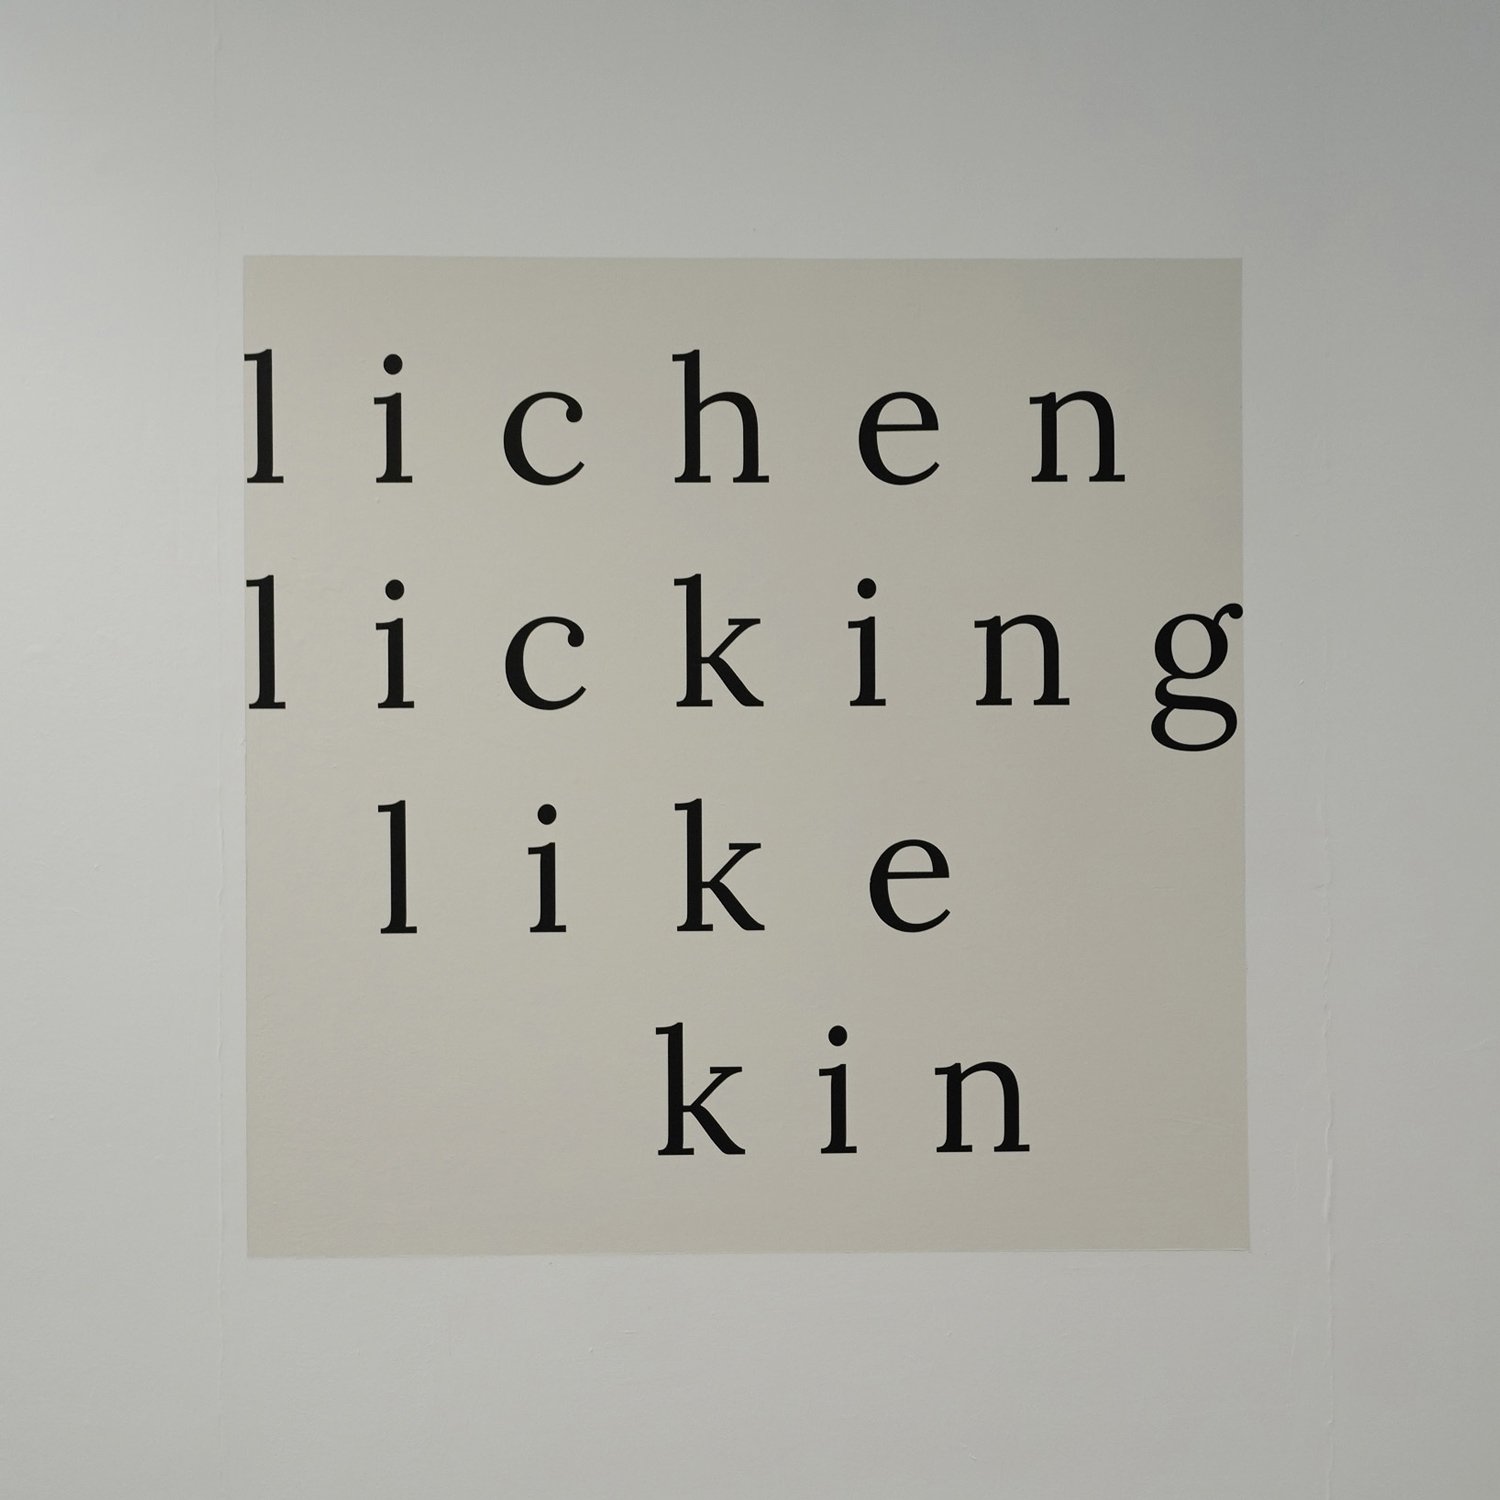 lucy-cash-artist-lichen-licking.jpg